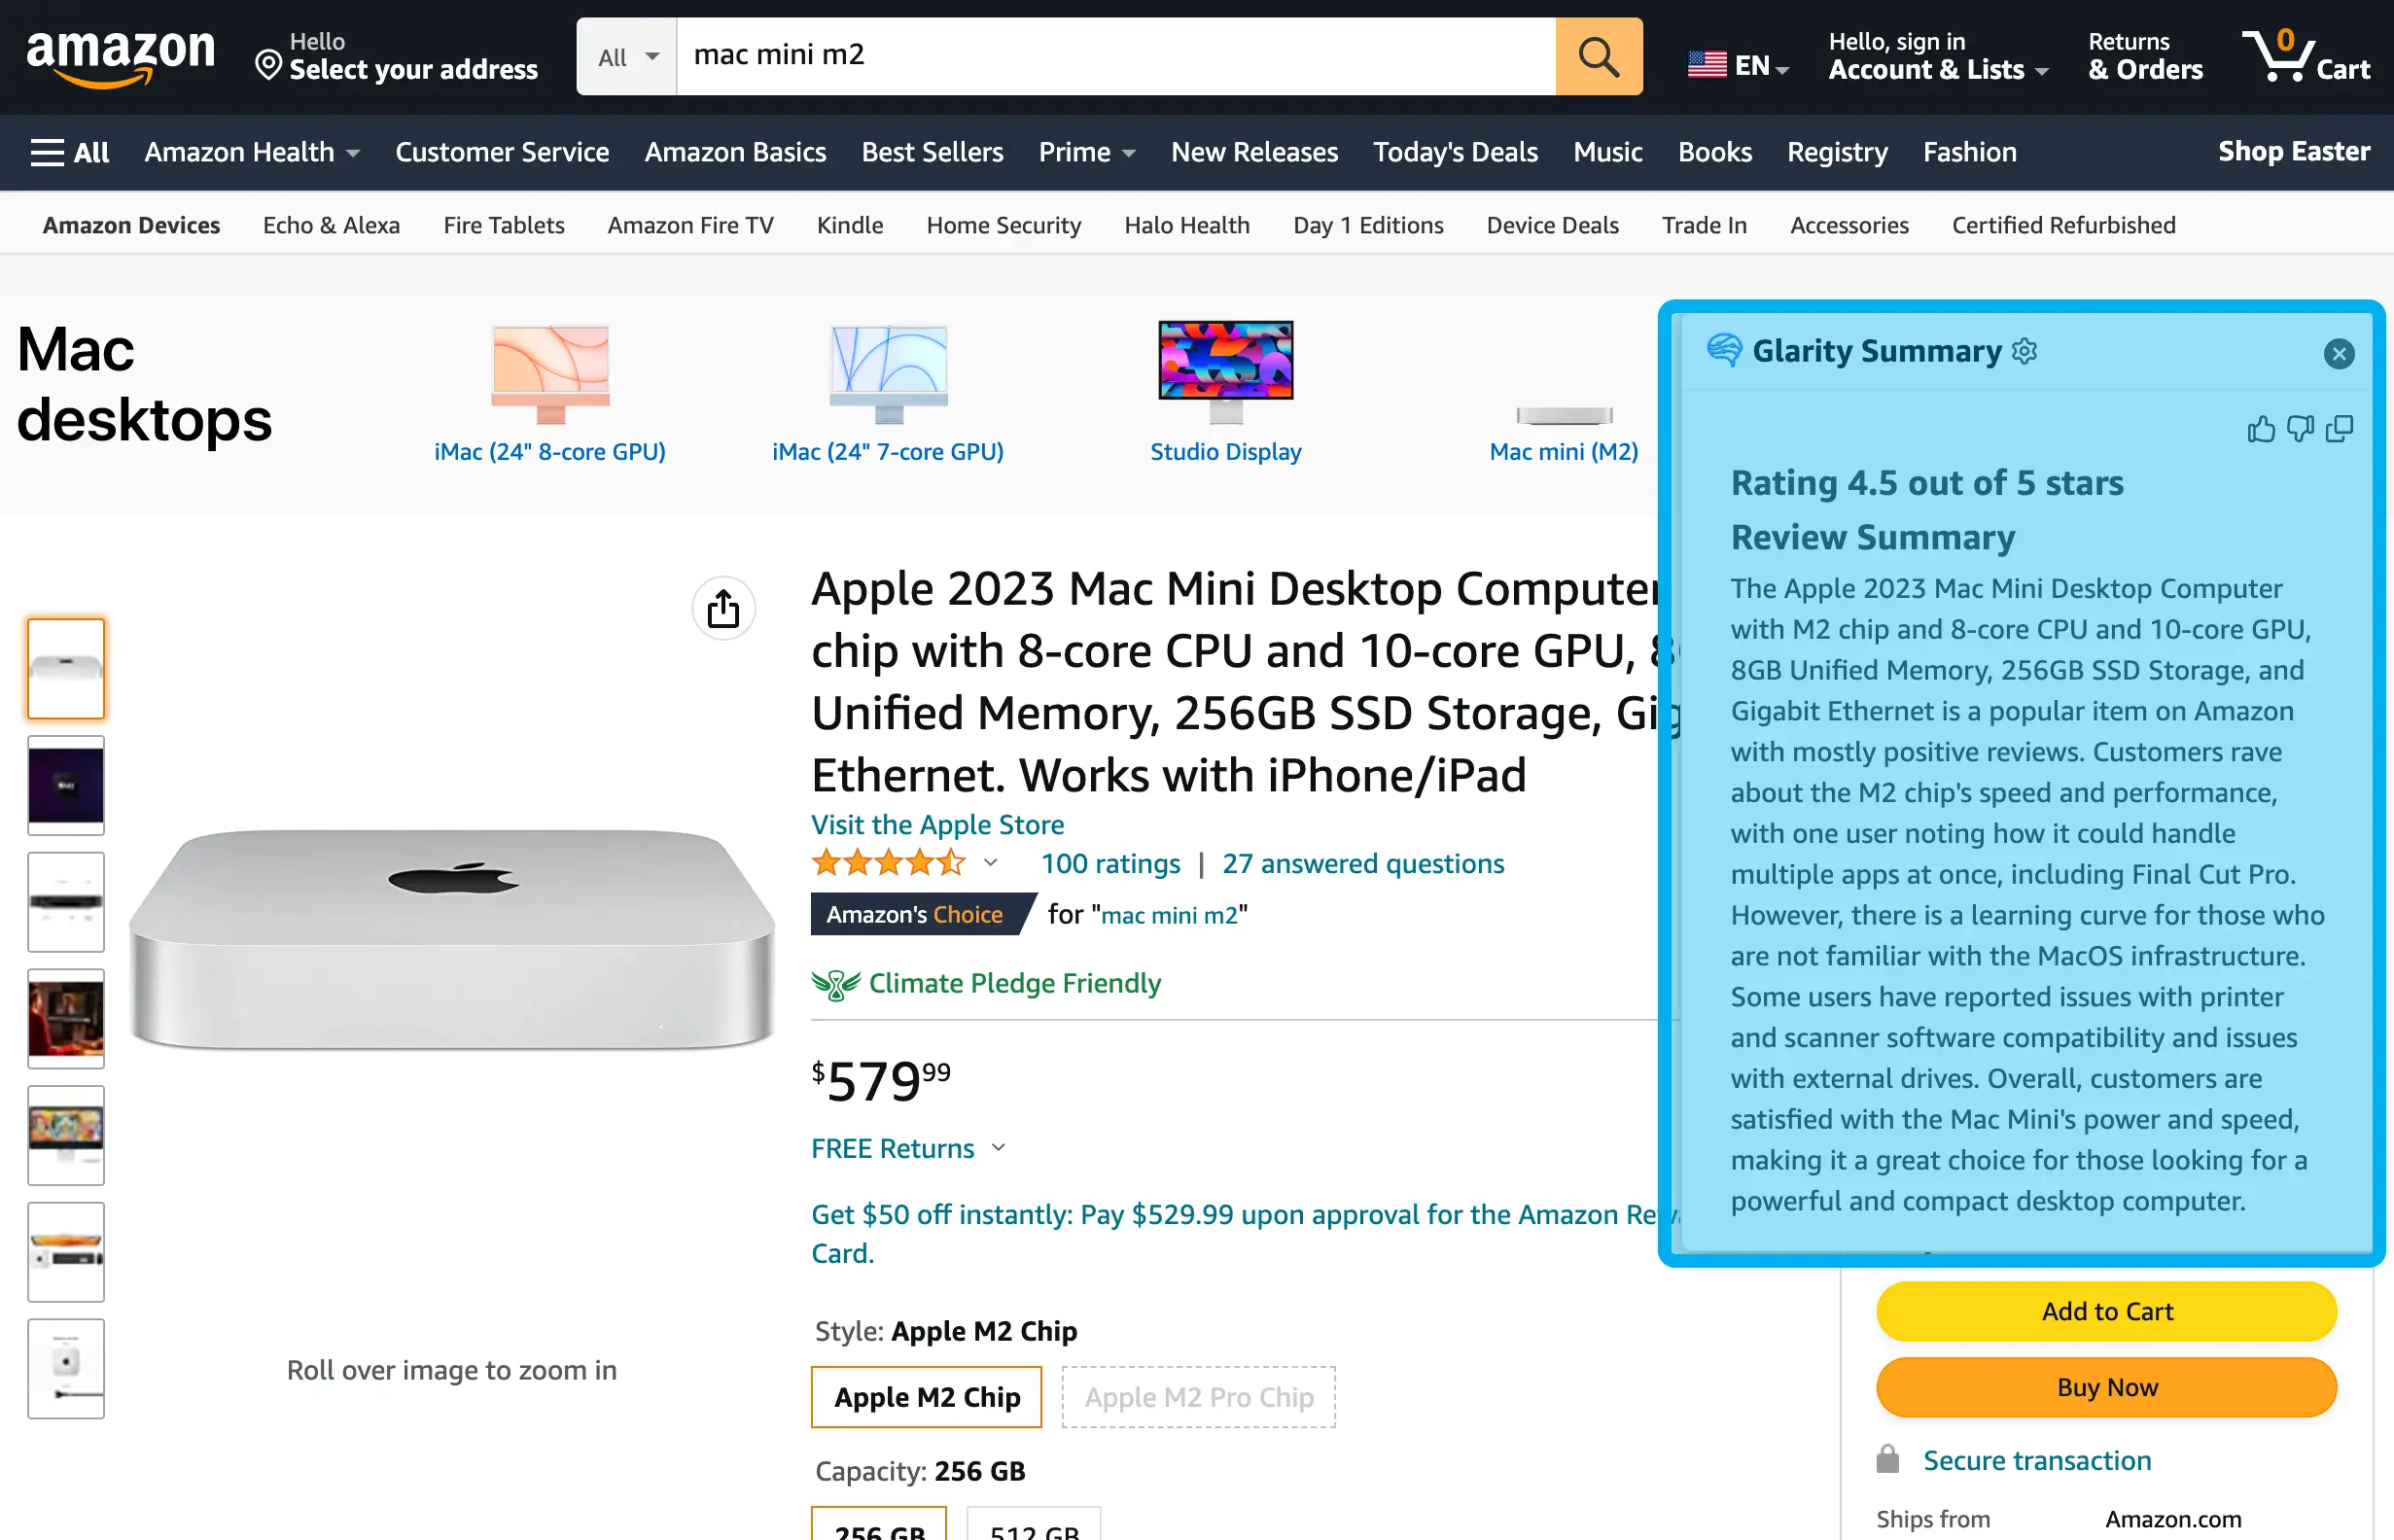 Amazon product reviews summary